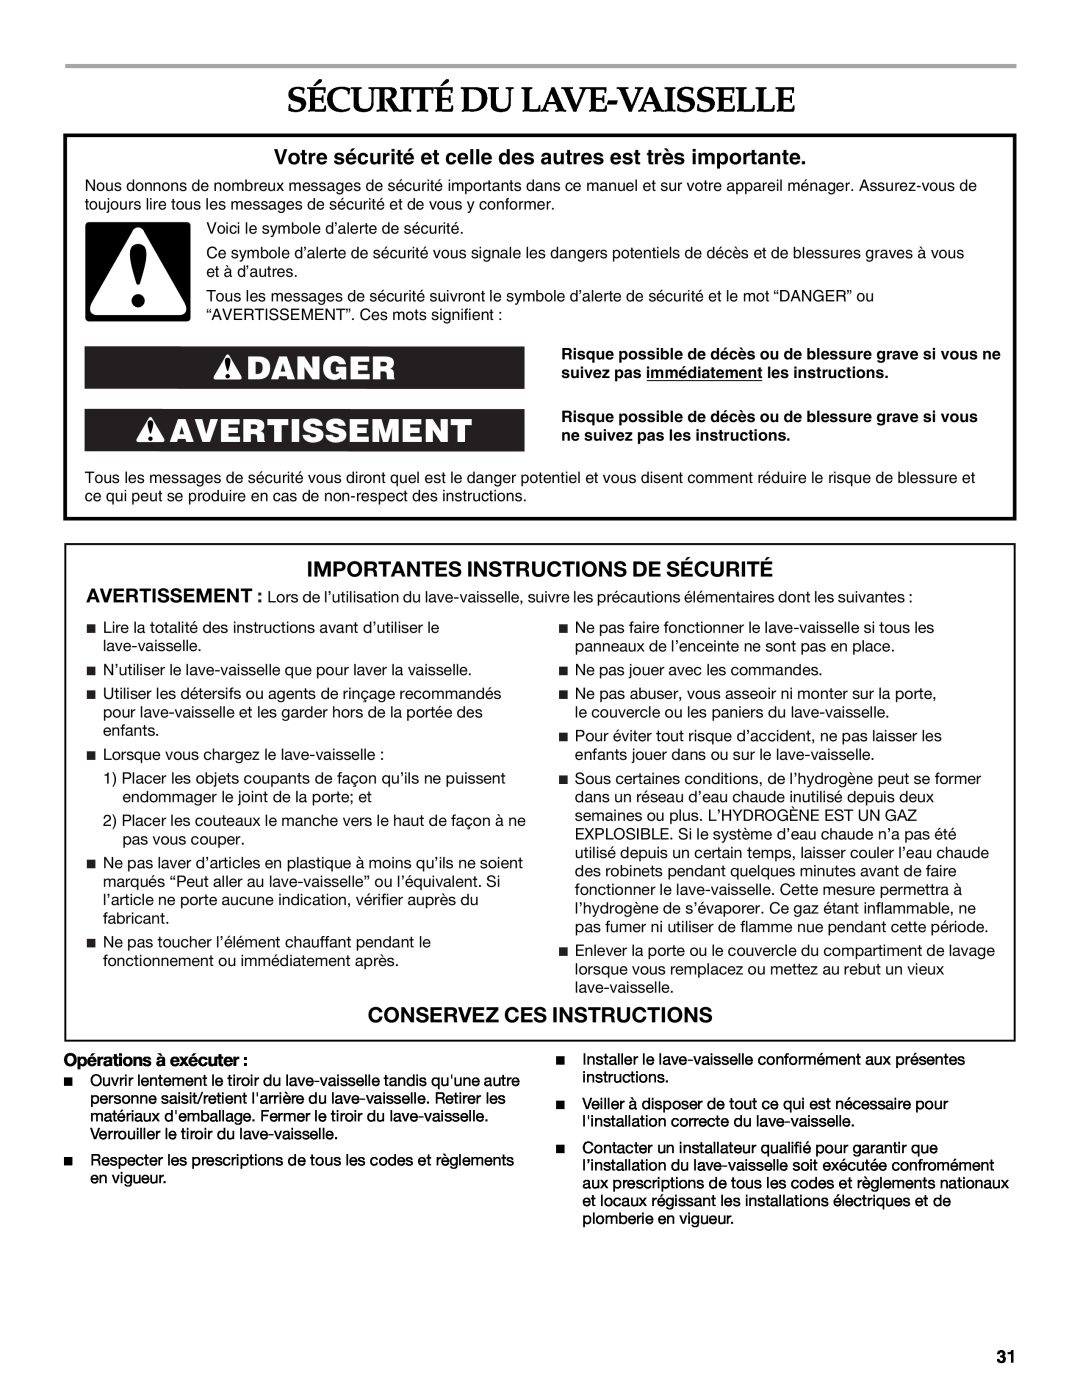 KitchenAid KUDD03STBL Sécurité Du Lave-Vaisselle, Danger Avertissement, Importantes Instructions De Sécurité 